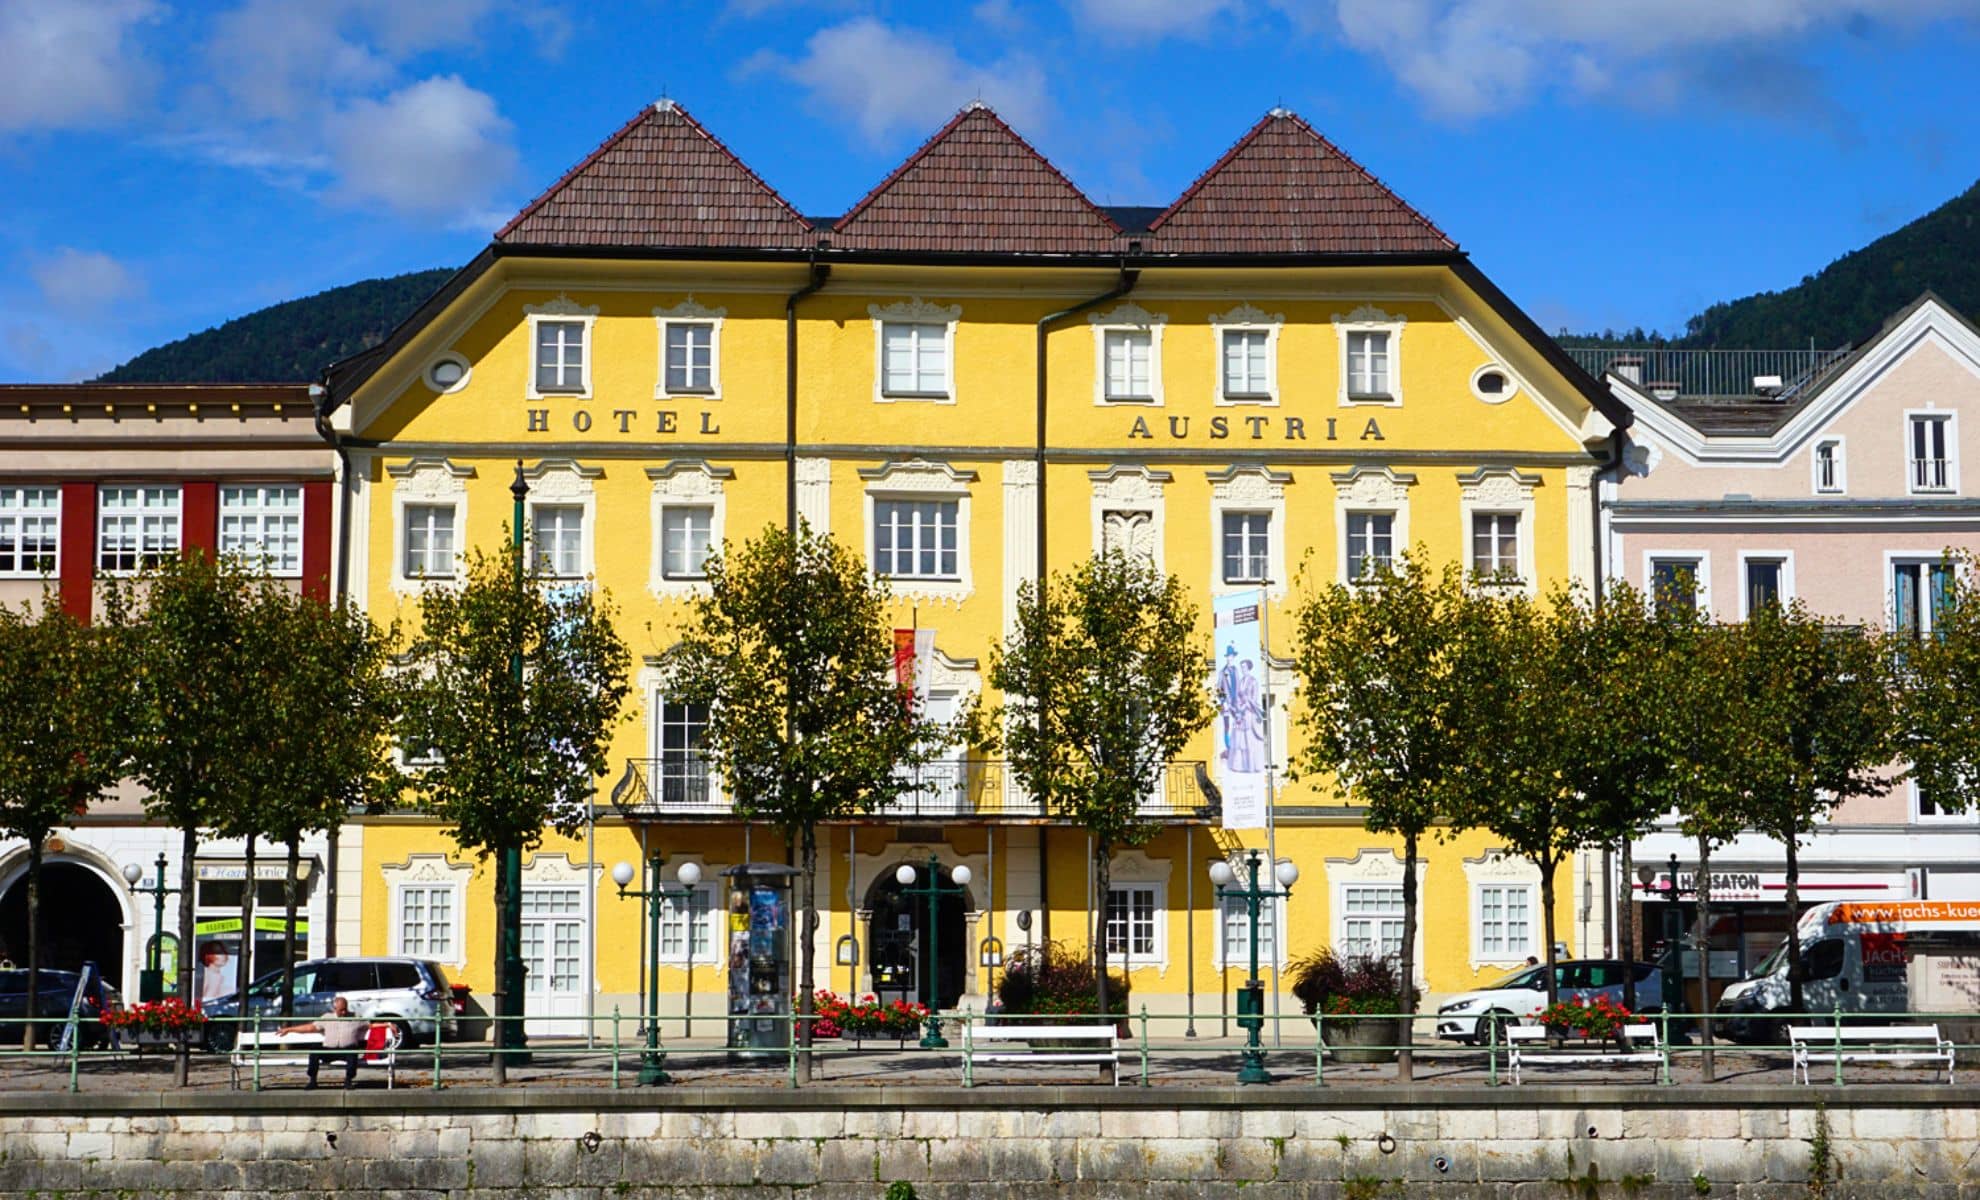 Le Musée de Bad Ischl ,Bad Ischl, Autriche